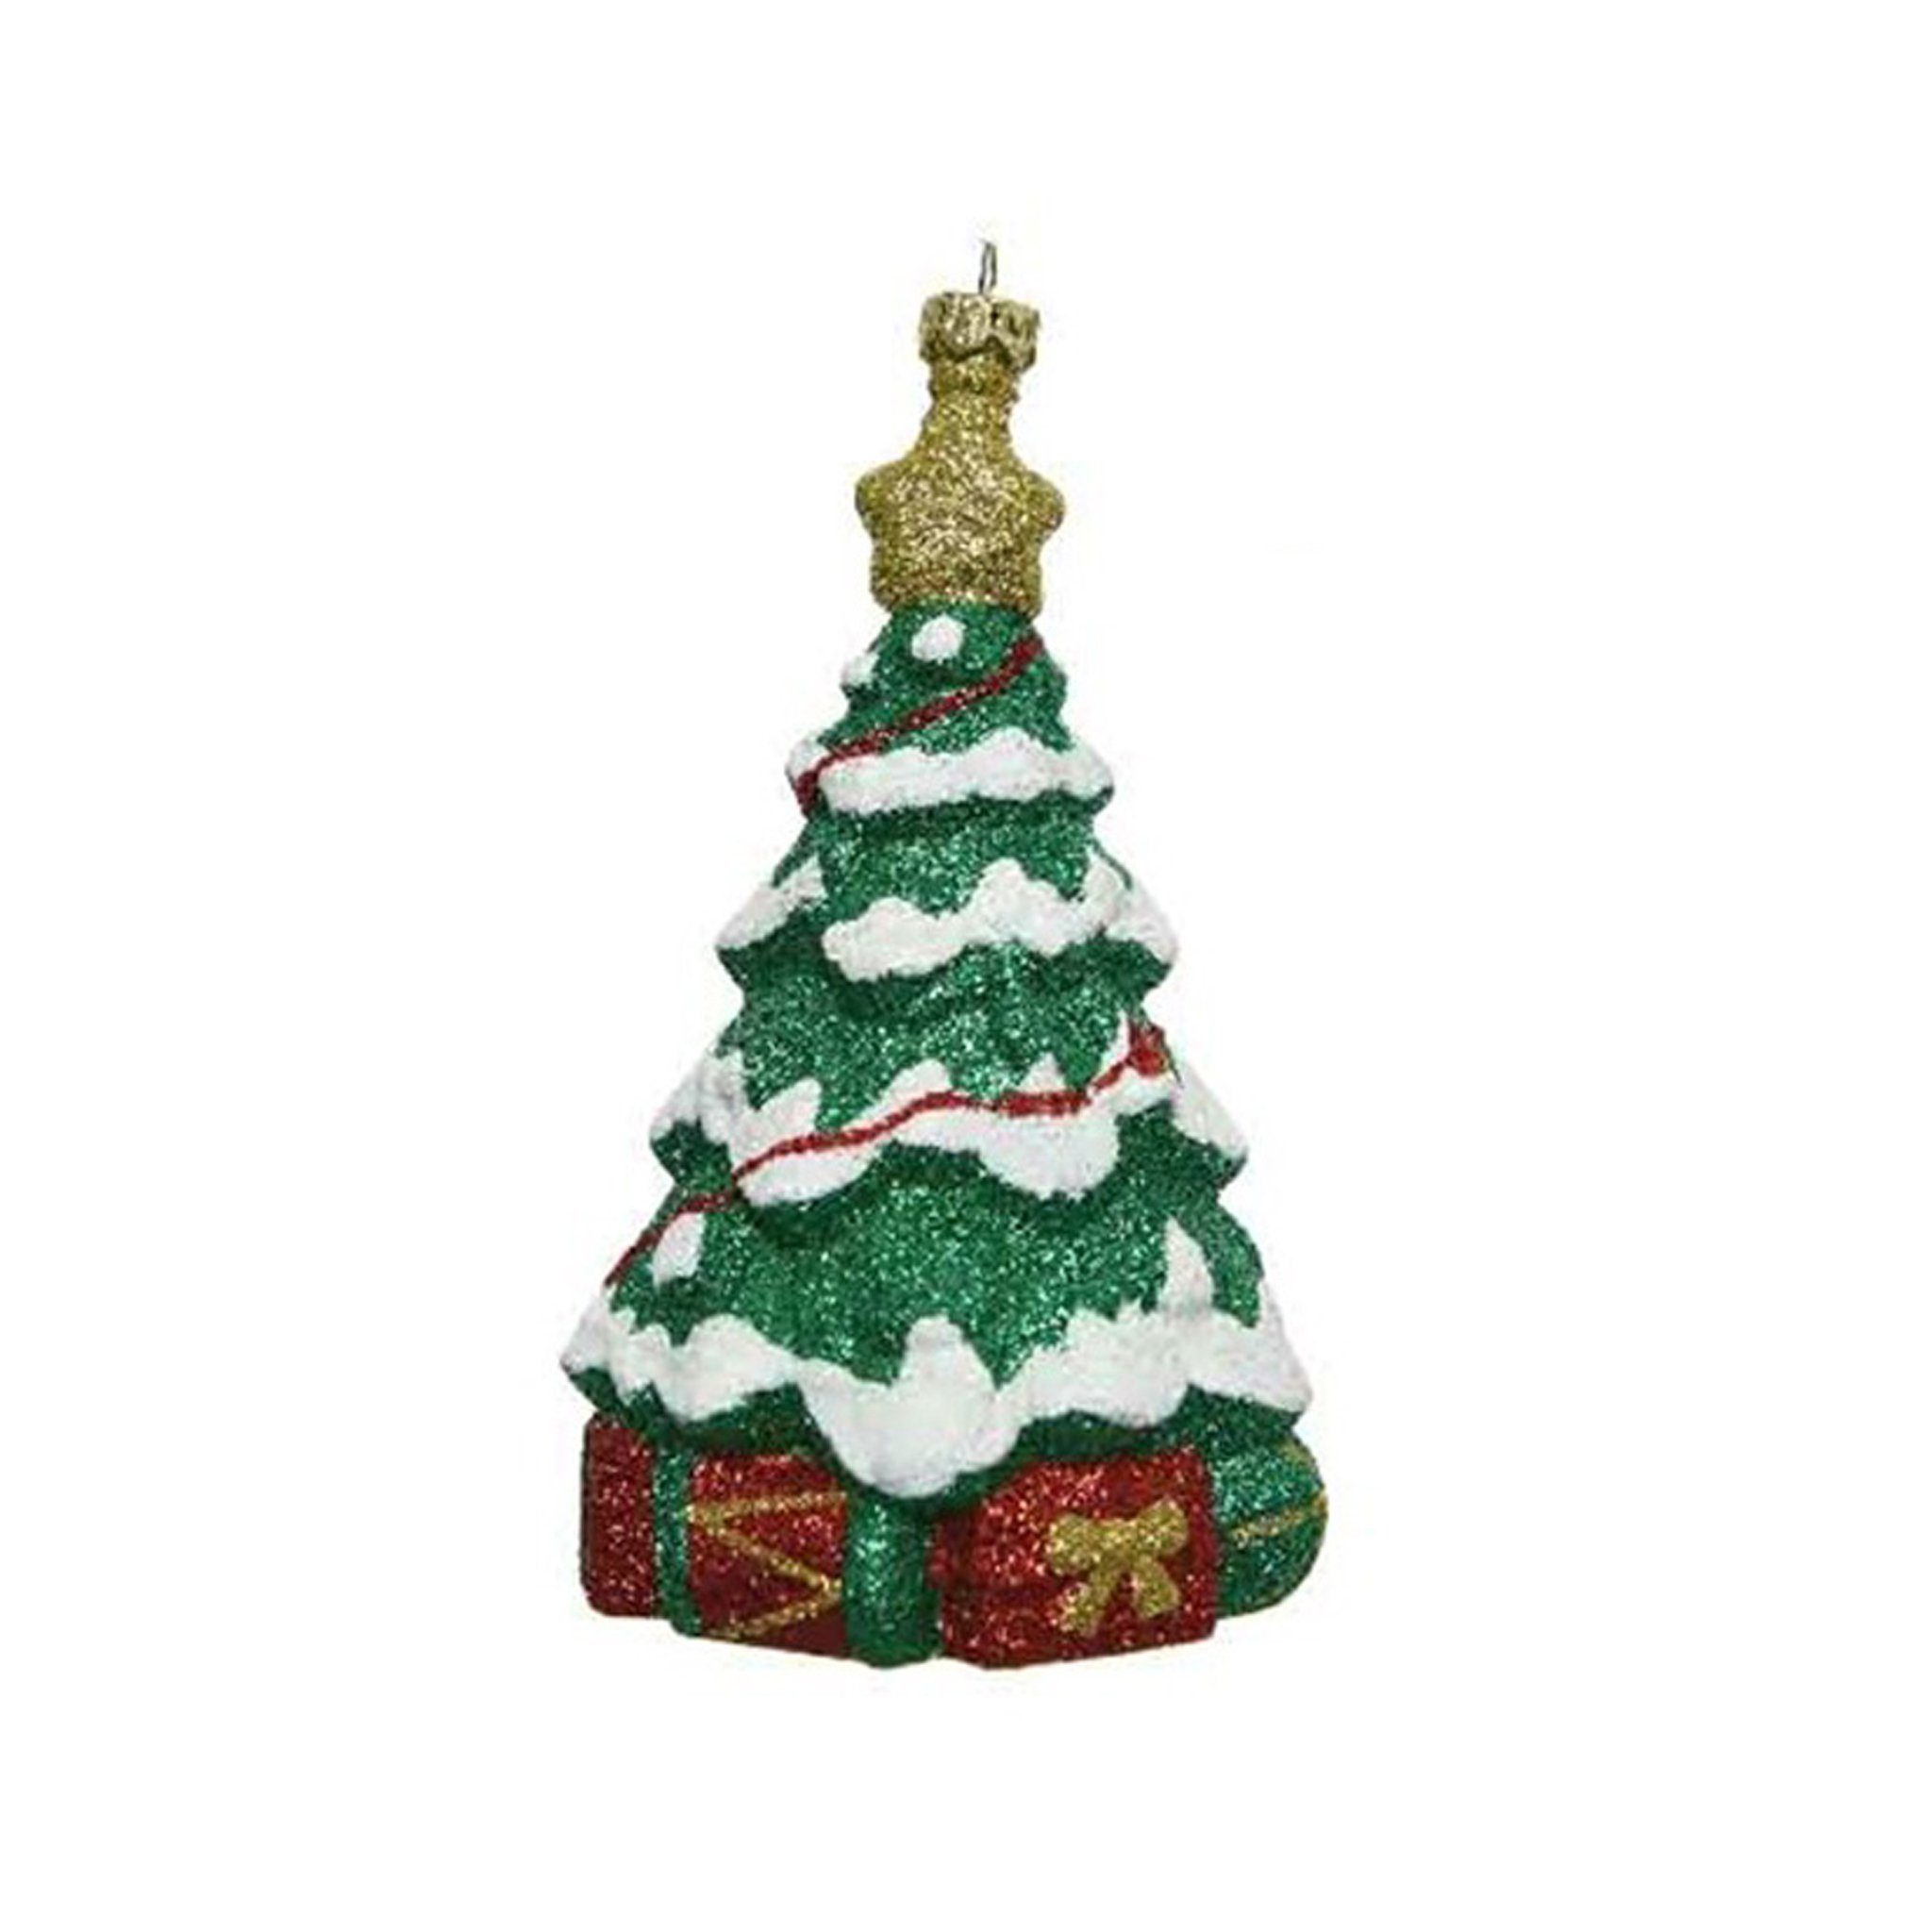 Kunststoff Christbaumschmuck, 14cm Decoris decorations Weihnachtsbaum season Christbaumschmuck